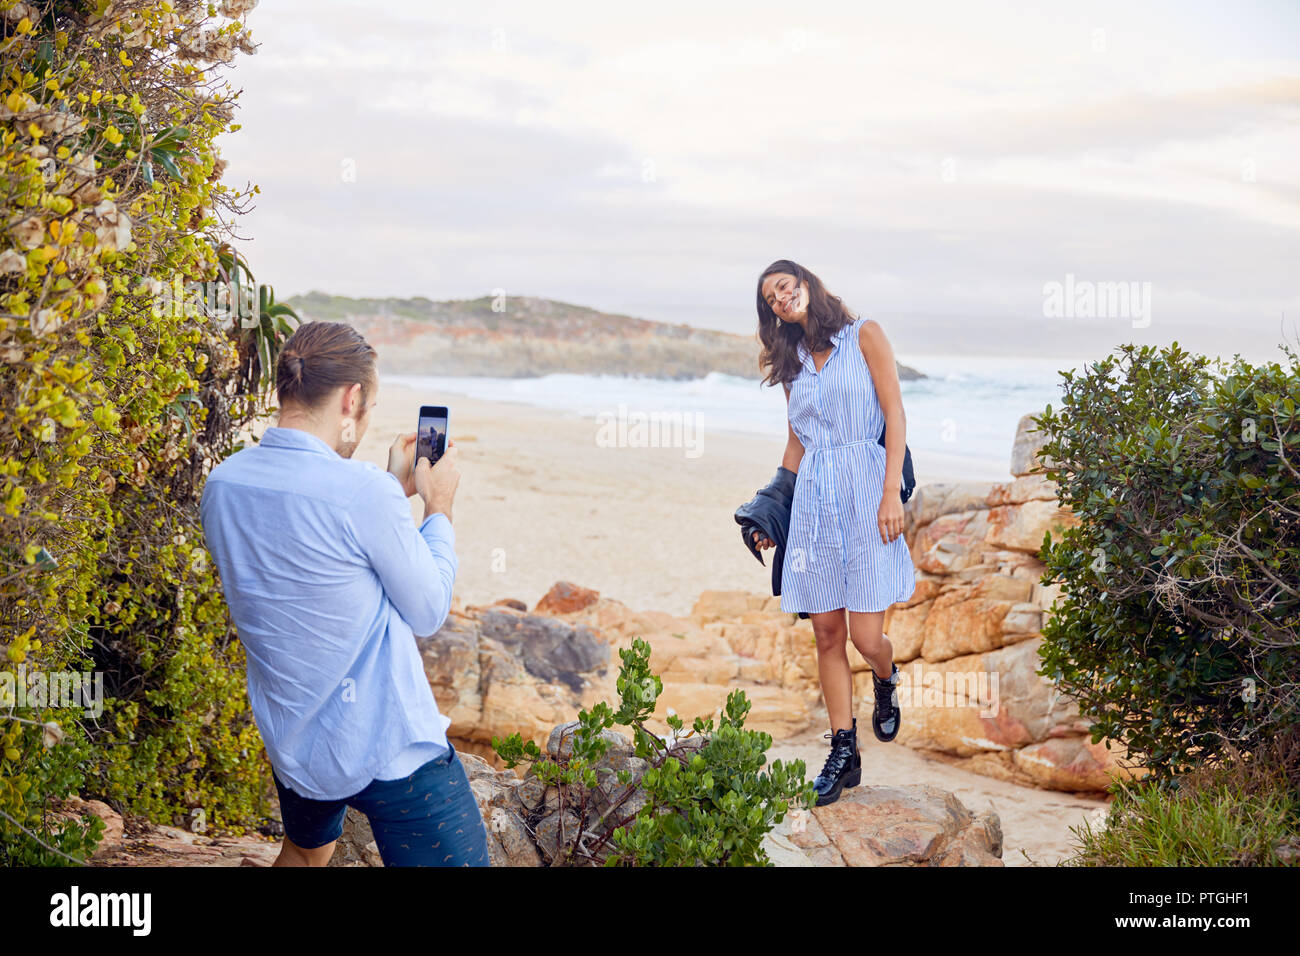 Jeune homme avec smart phone photographier copine avec ocean in background Banque D'Images